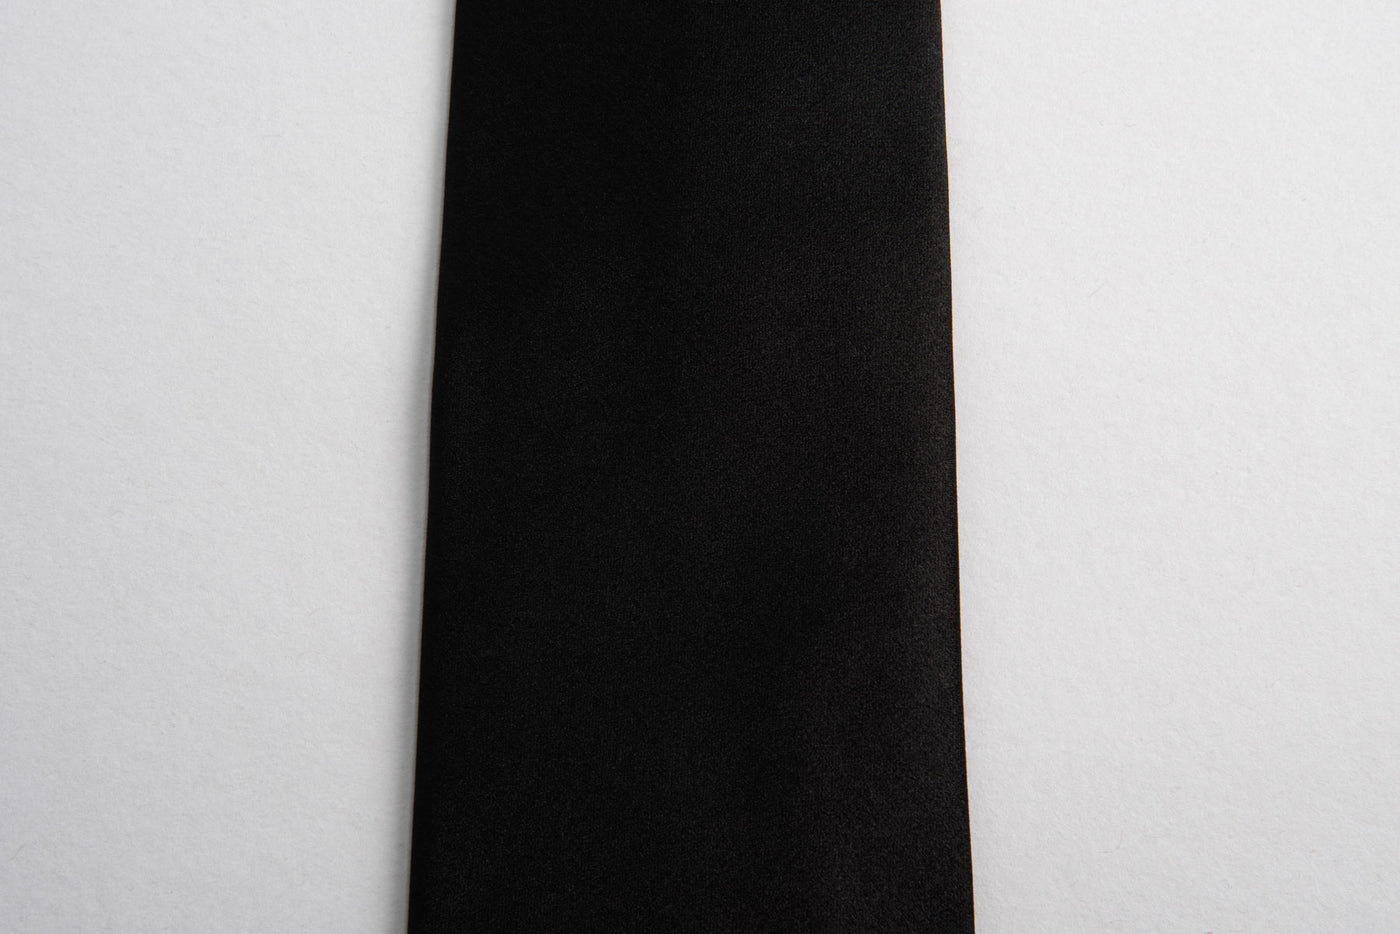 EG Cappelli Tie - Black Silk